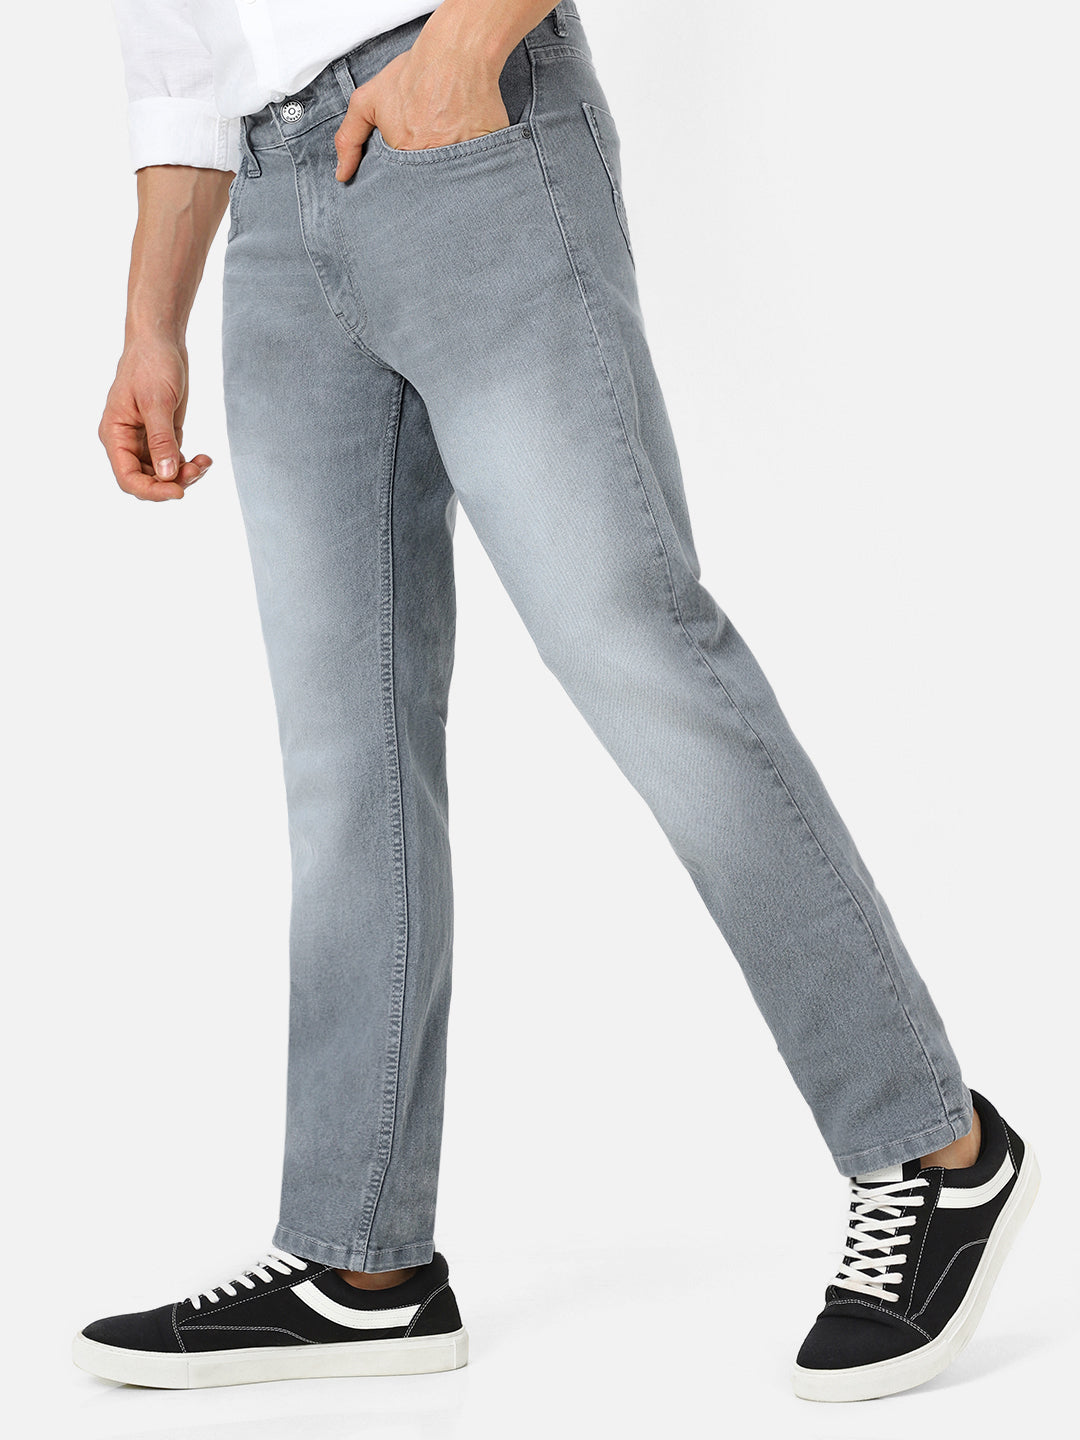 Men's Light Grey Regular Fit Washed Jeans Stretchable